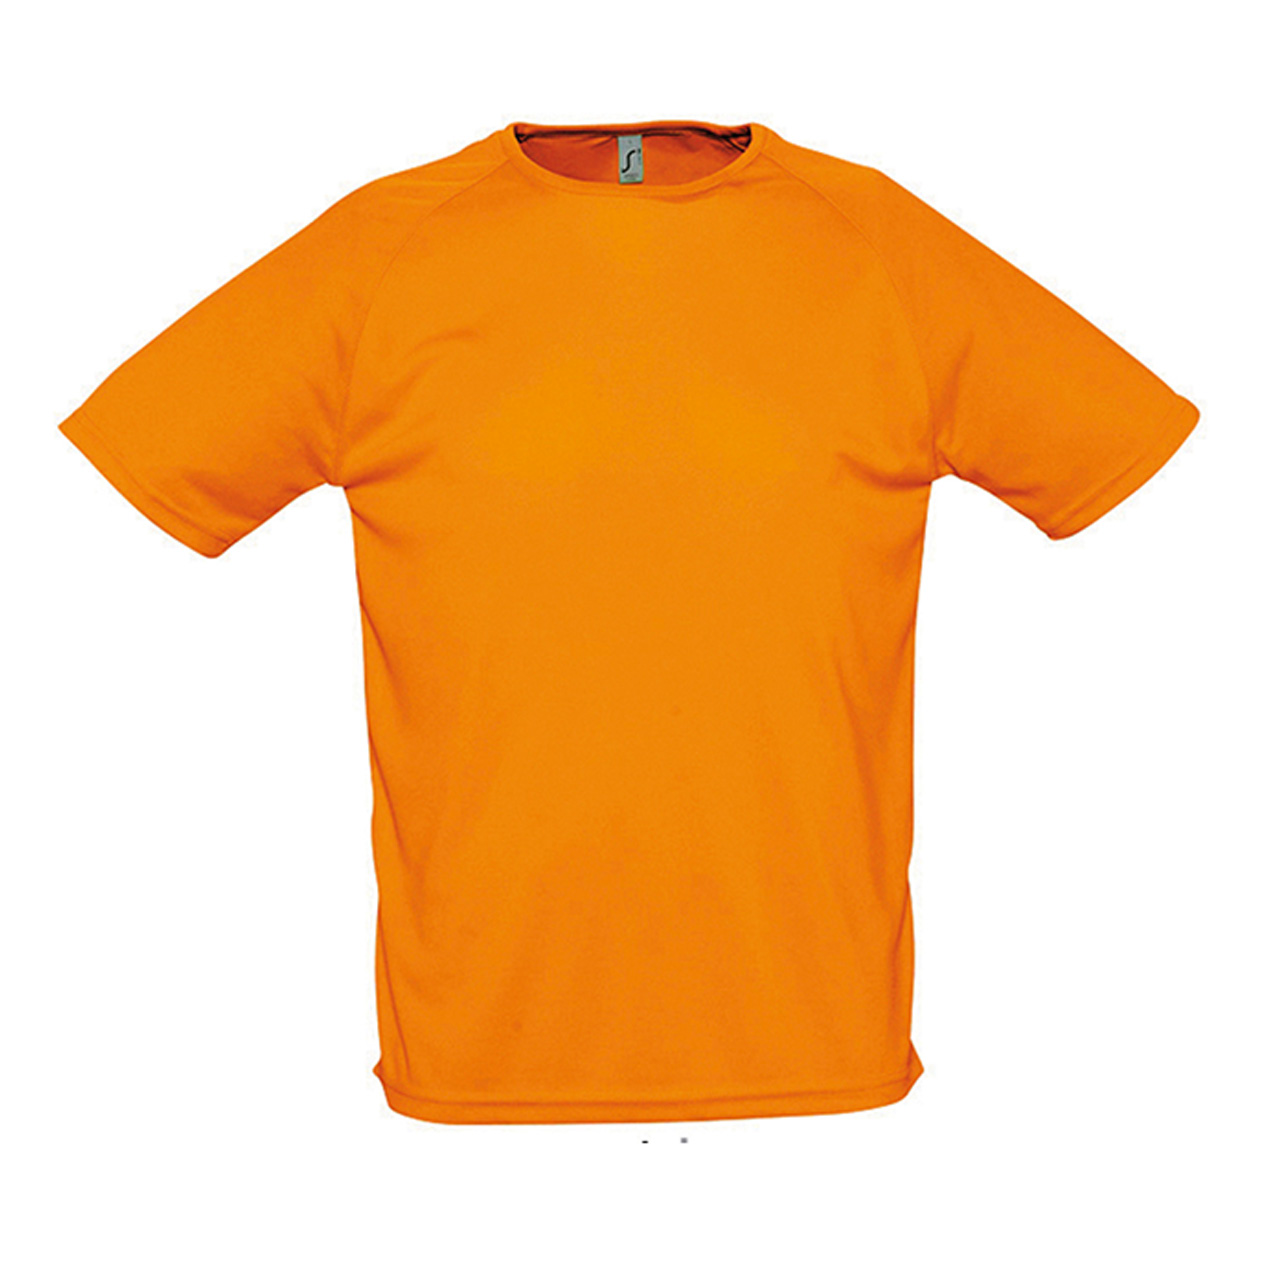 تی شرت مردانه سولز مدل 404-11939